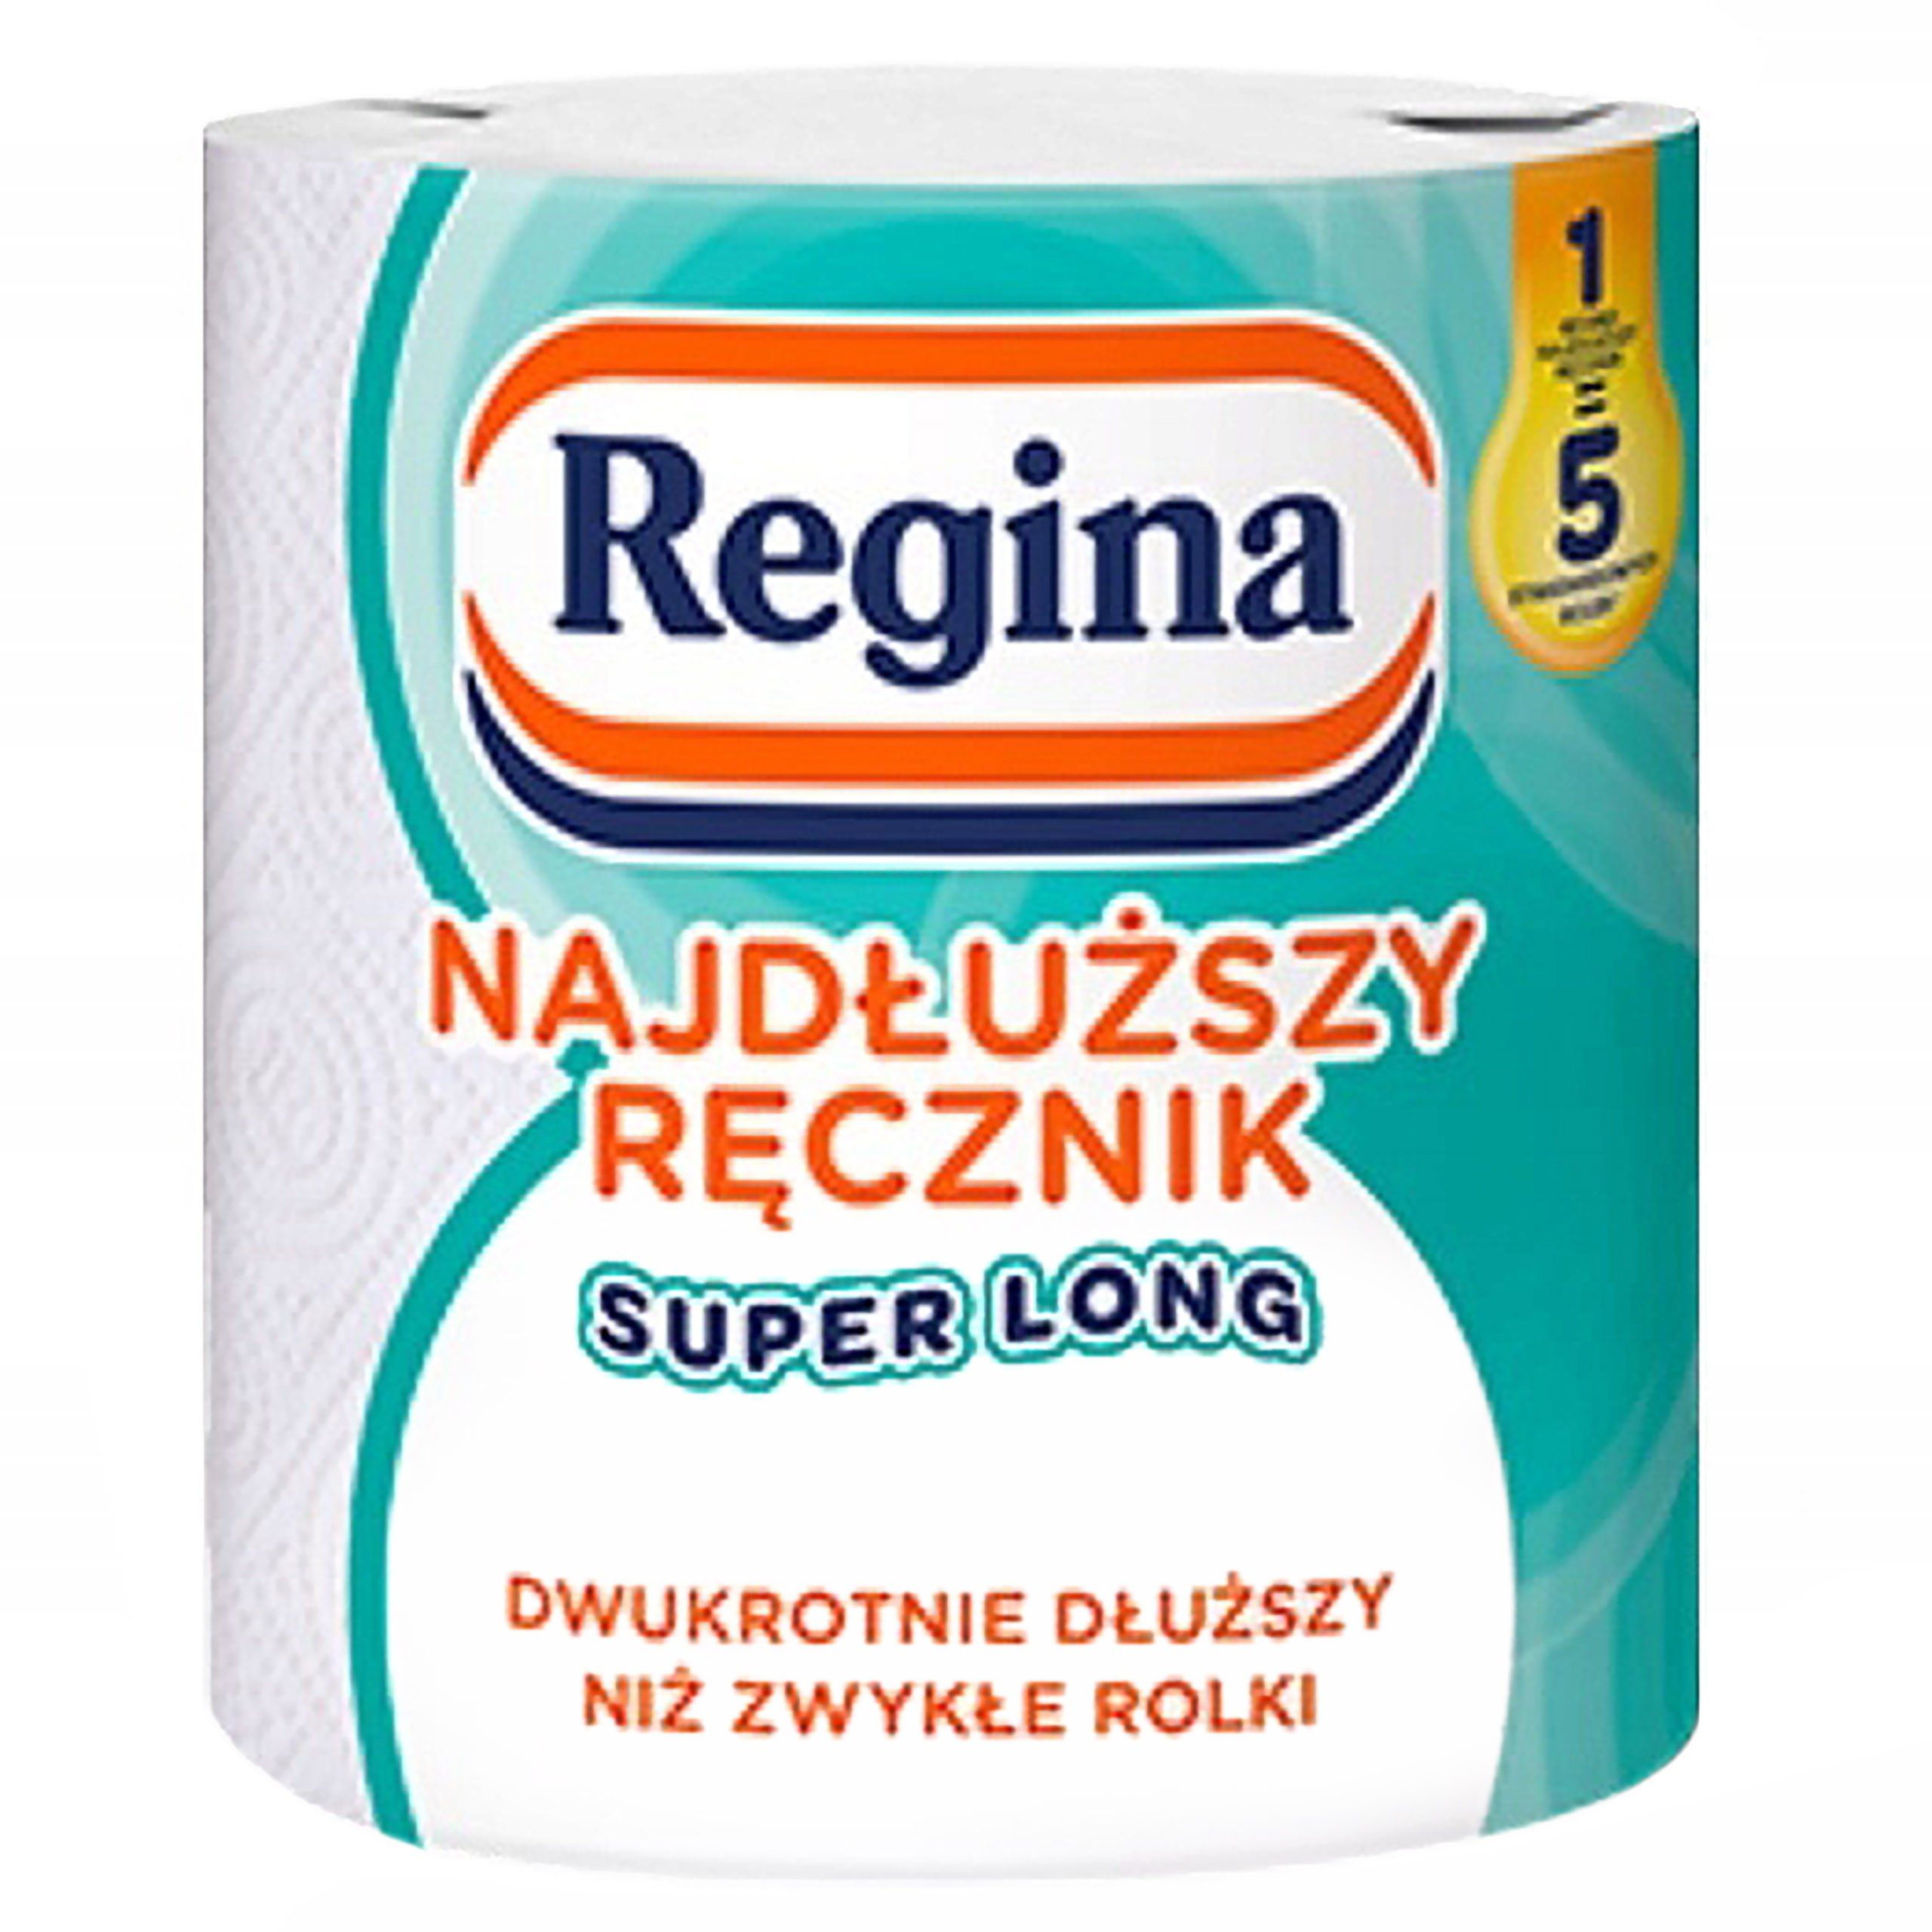 Sarcia.eu Papierhandtuch Regina Papierhandtuch SUPER CLEAN 1 Rolle 1 Pack